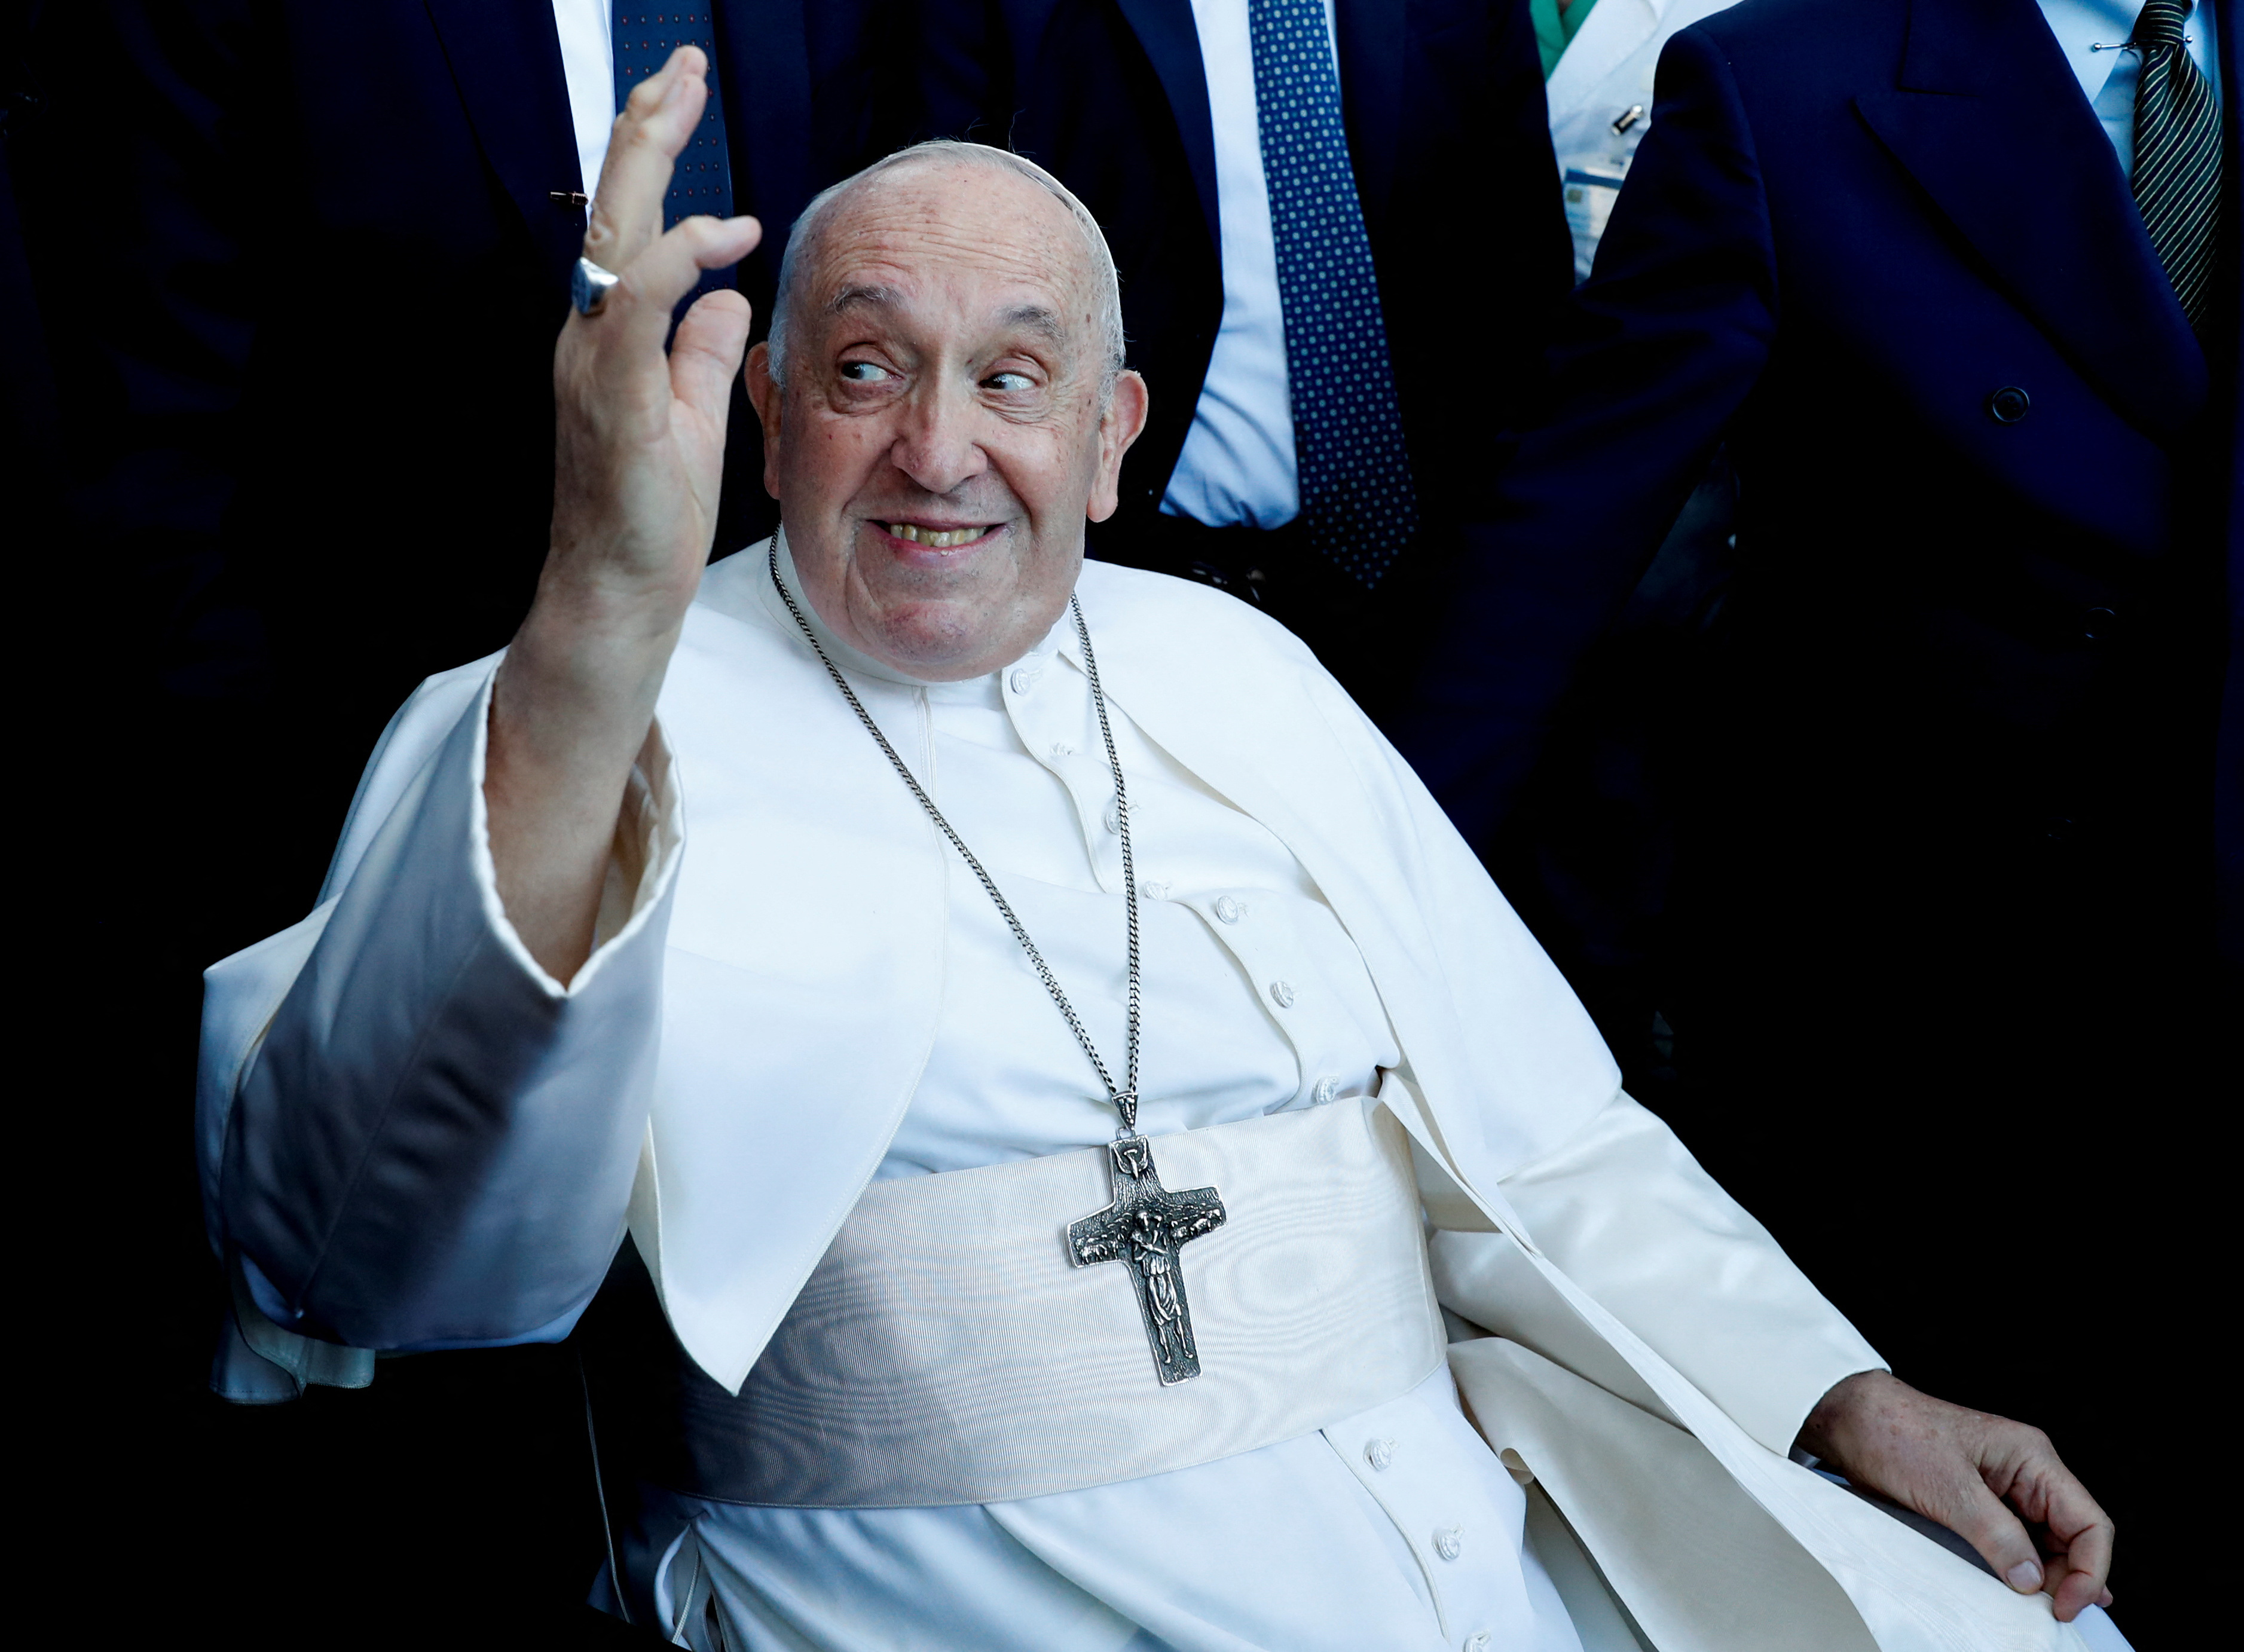 El papa Francisco fue dado de alta del hospital Gemelli de Roma tras su operación de abdomen. (REUTERS)